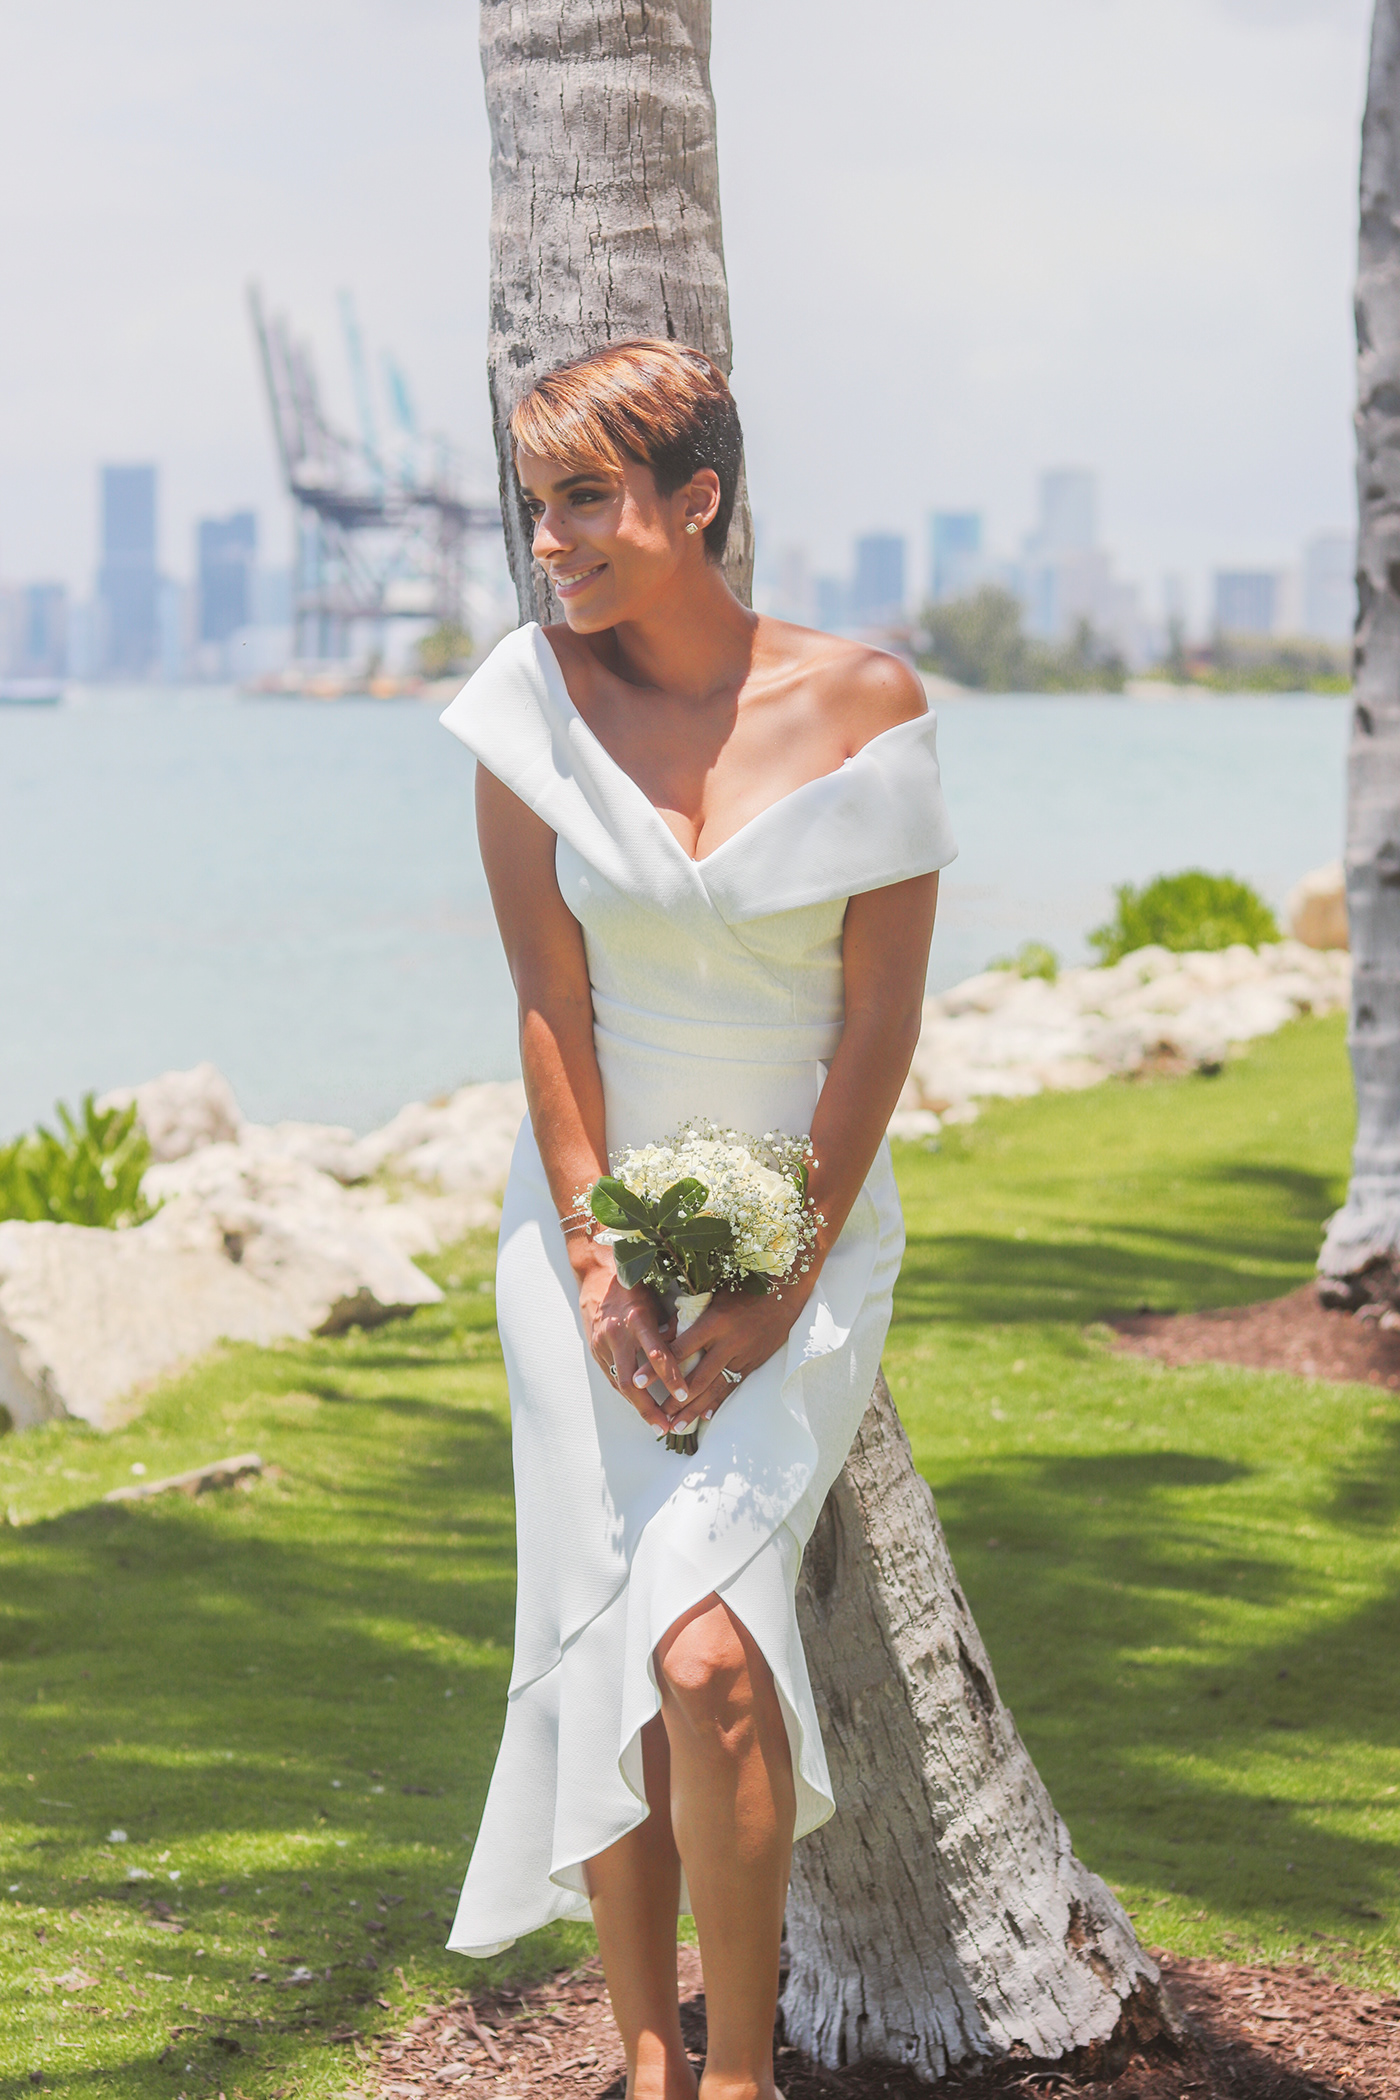 Wedding Day/ Miami Courthouse on Behance
 Miami Beach District Court Wedding